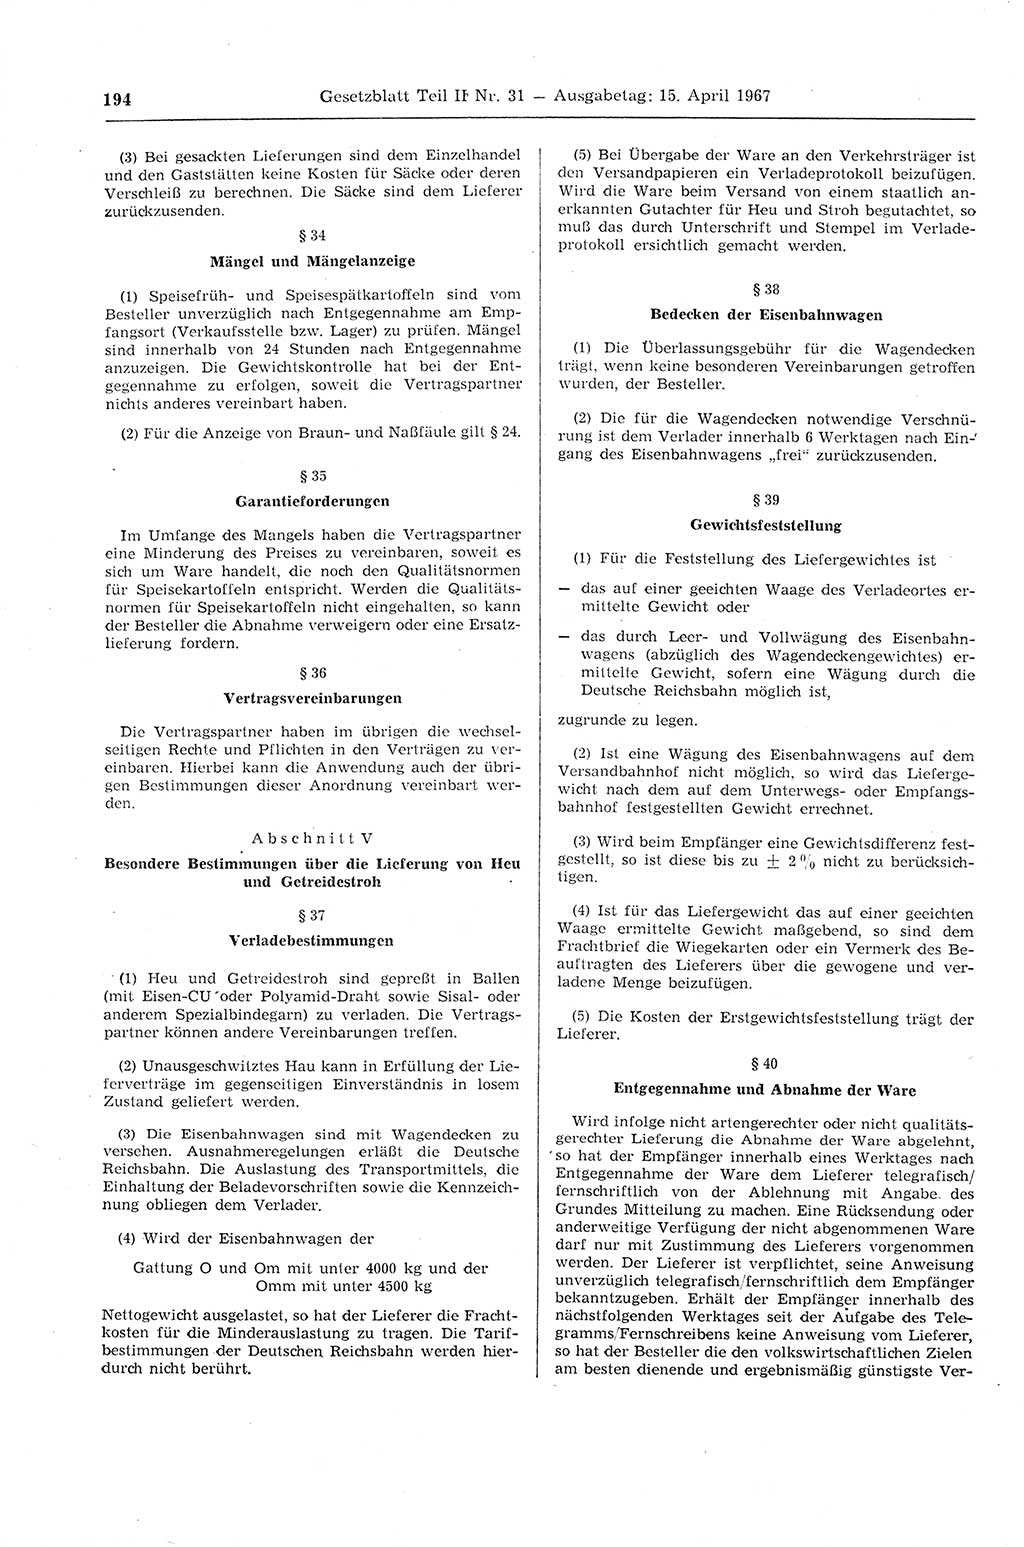 Gesetzblatt (GBl.) der Deutschen Demokratischen Republik (DDR) Teil ⅠⅠ 1967, Seite 194 (GBl. DDR ⅠⅠ 1967, S. 194)